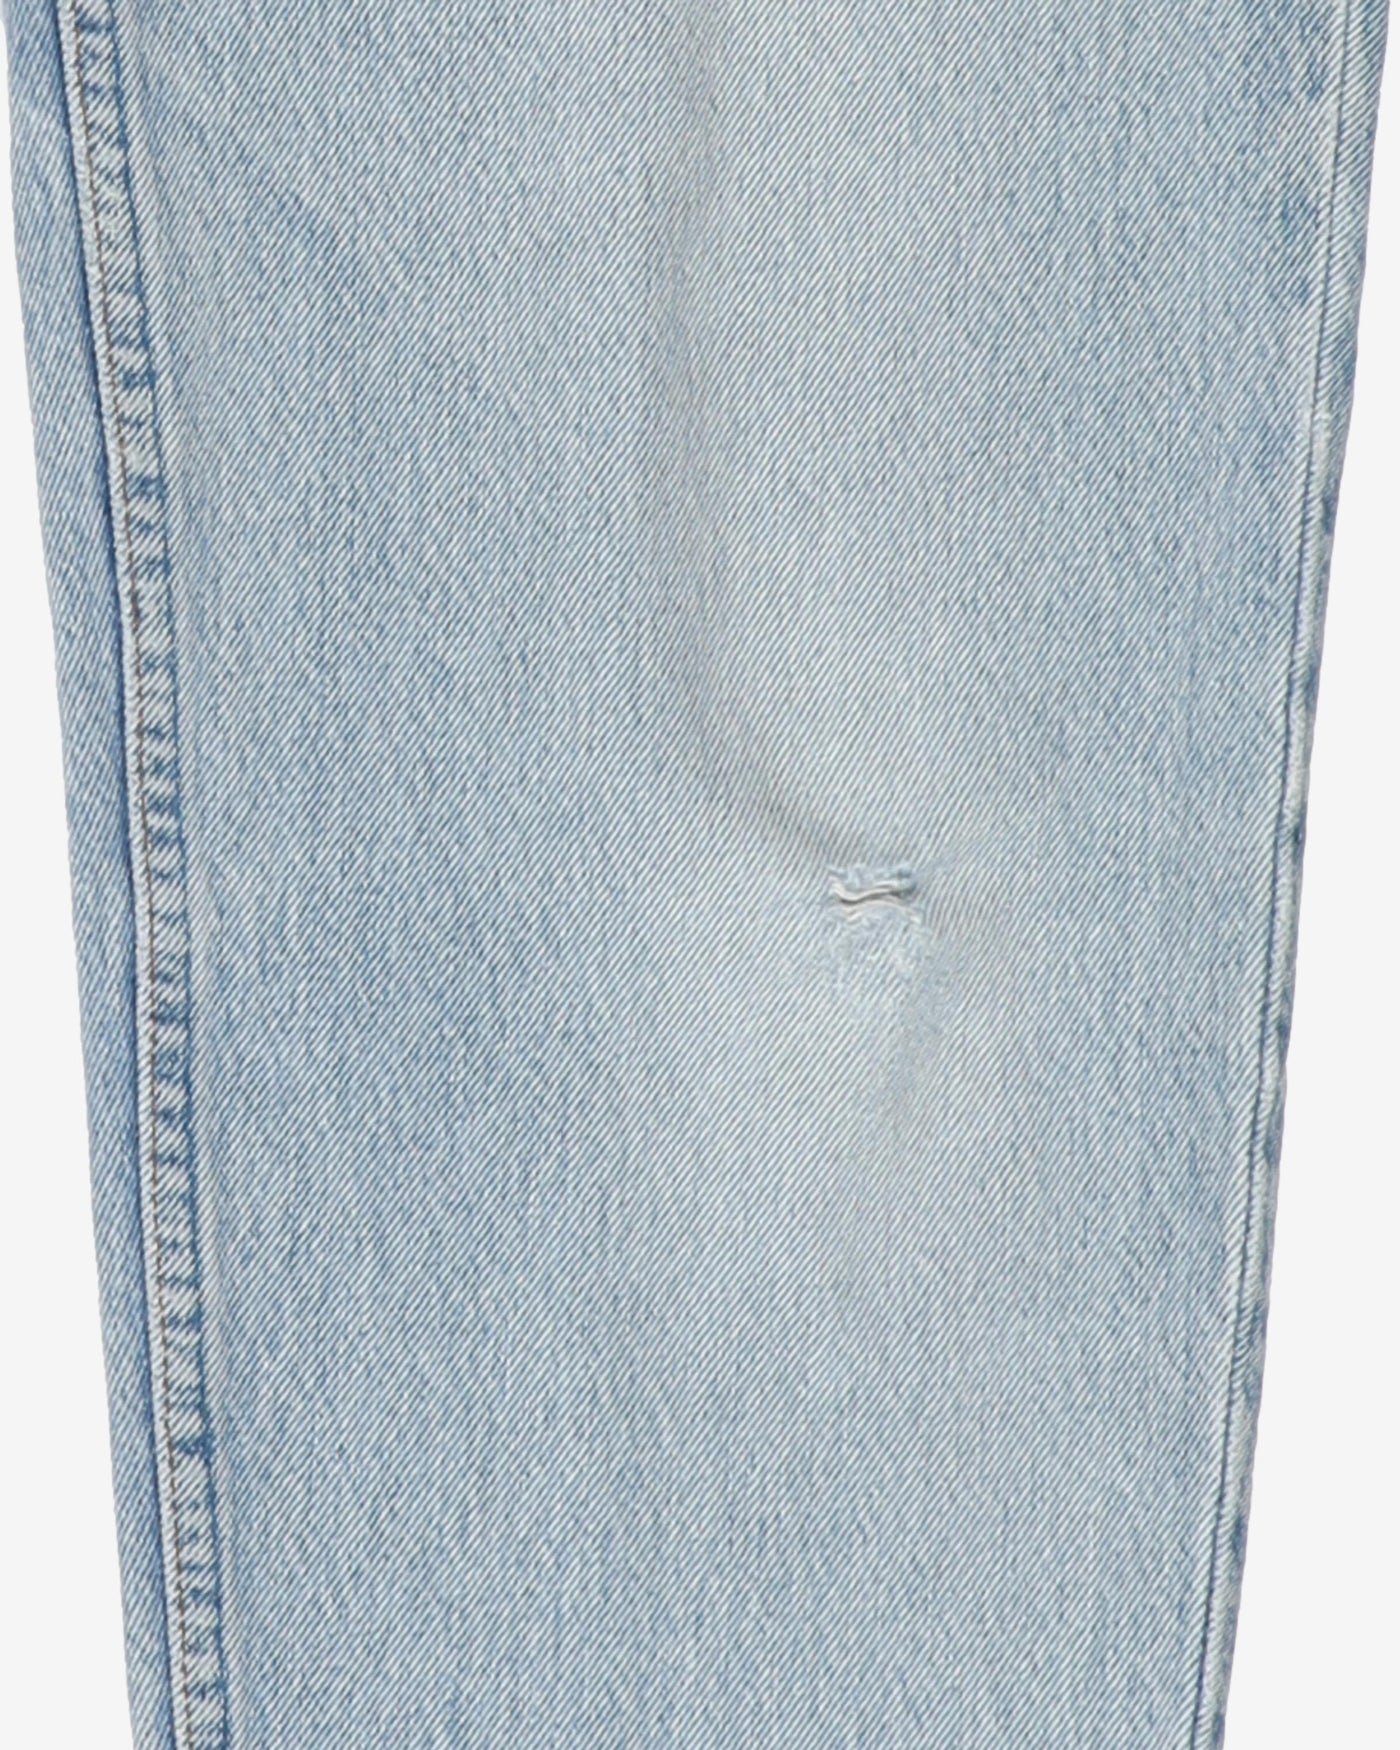 Vintage Blue Stonewash 501 Distressed Levi's Jeans - W28 L25